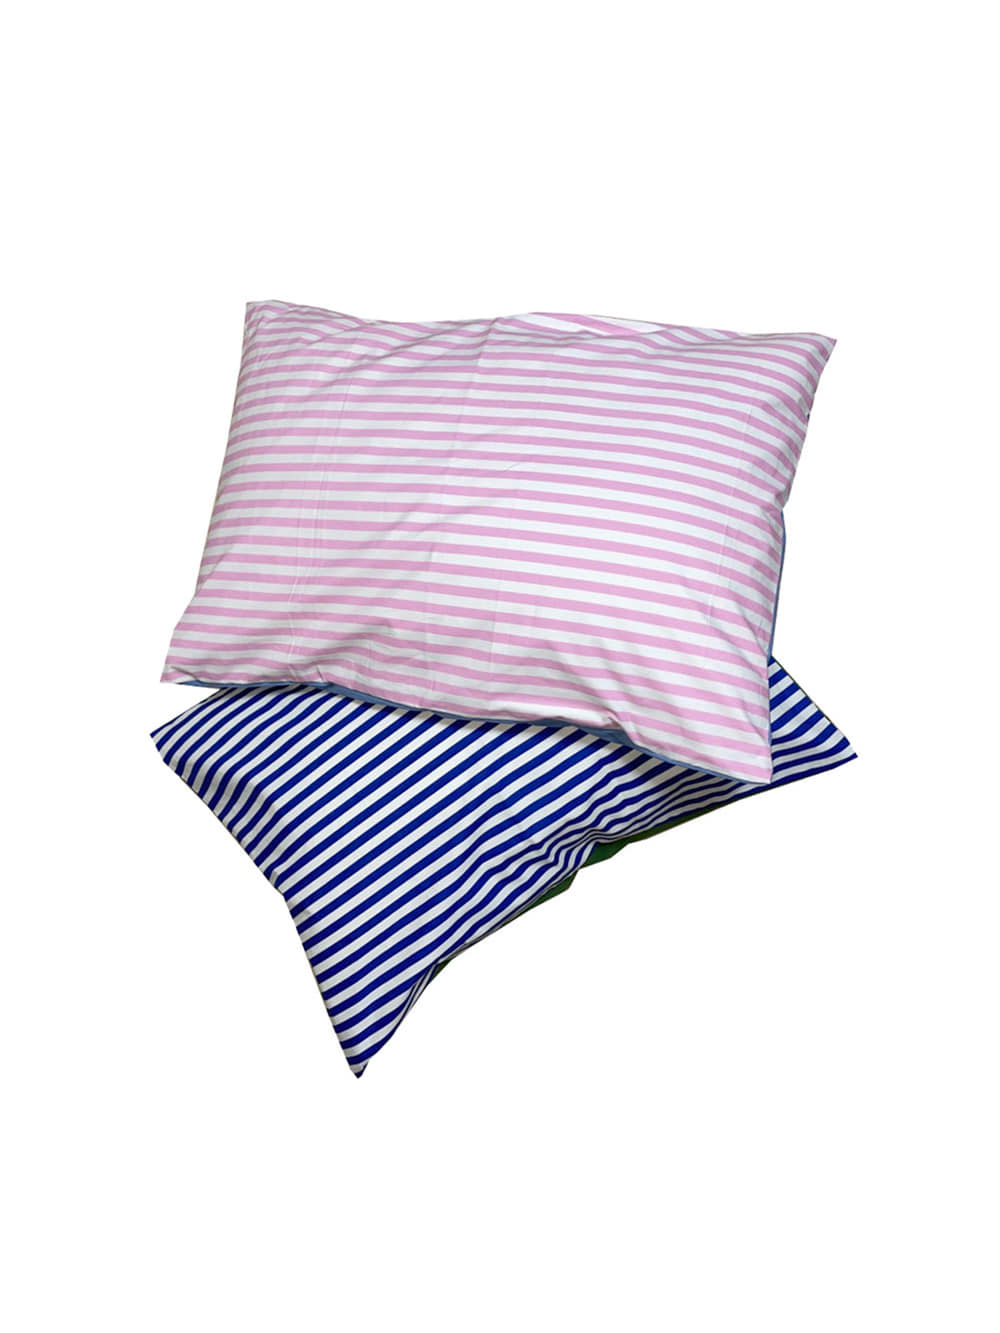 Half Stripe Pillow Cover